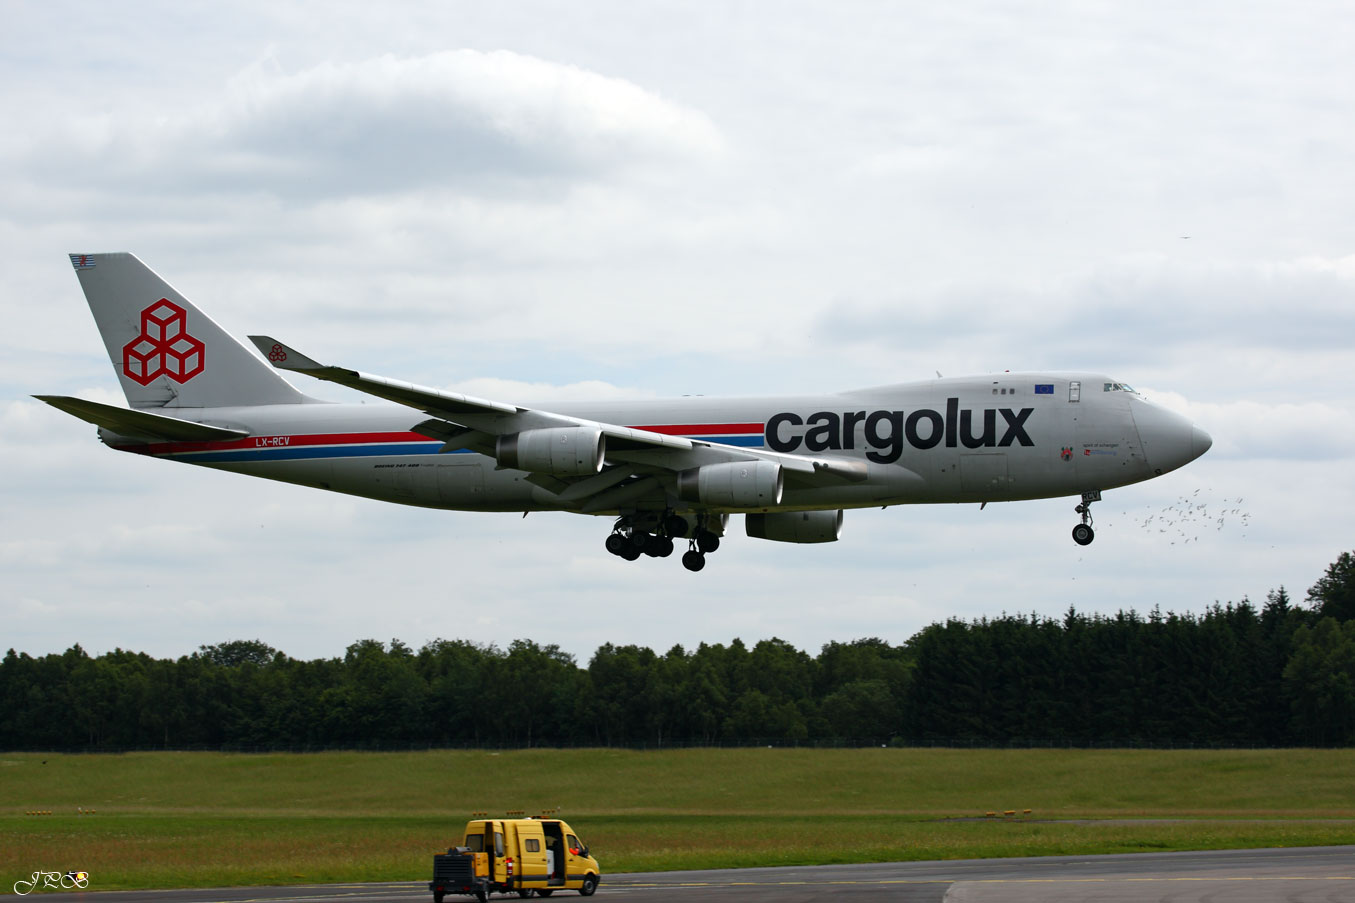 Cargolux Boeing 747-400 F "spirit of schengen"